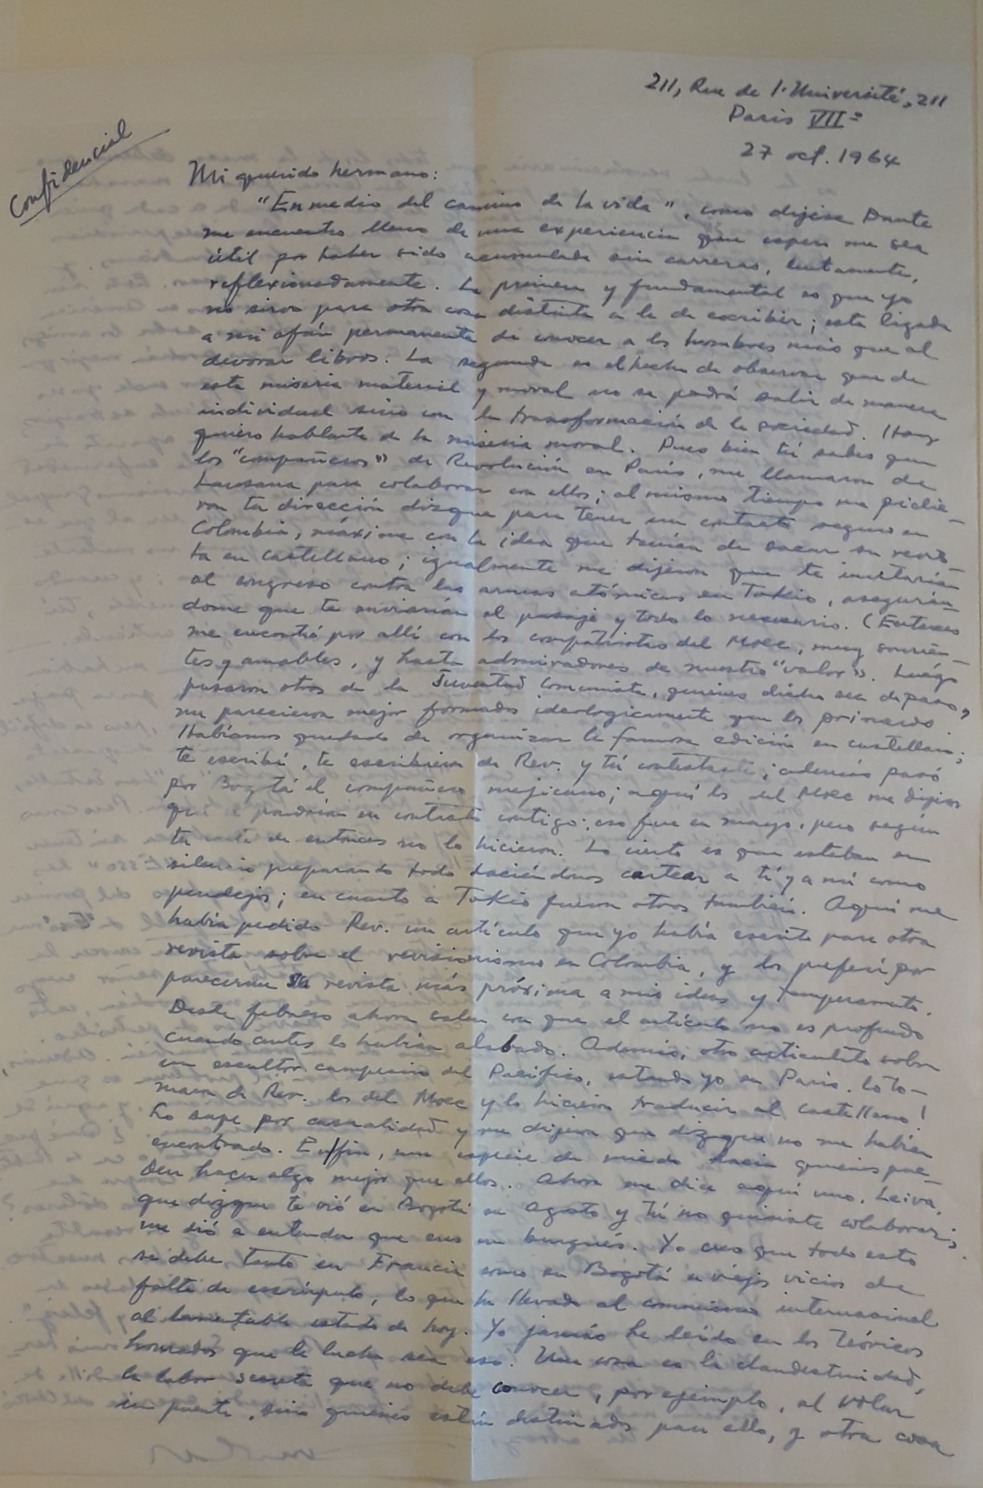 Carta del escritor Arnoldo Palacios a Manuel Zapata Olivella, París, 27 de octubre de 1964.